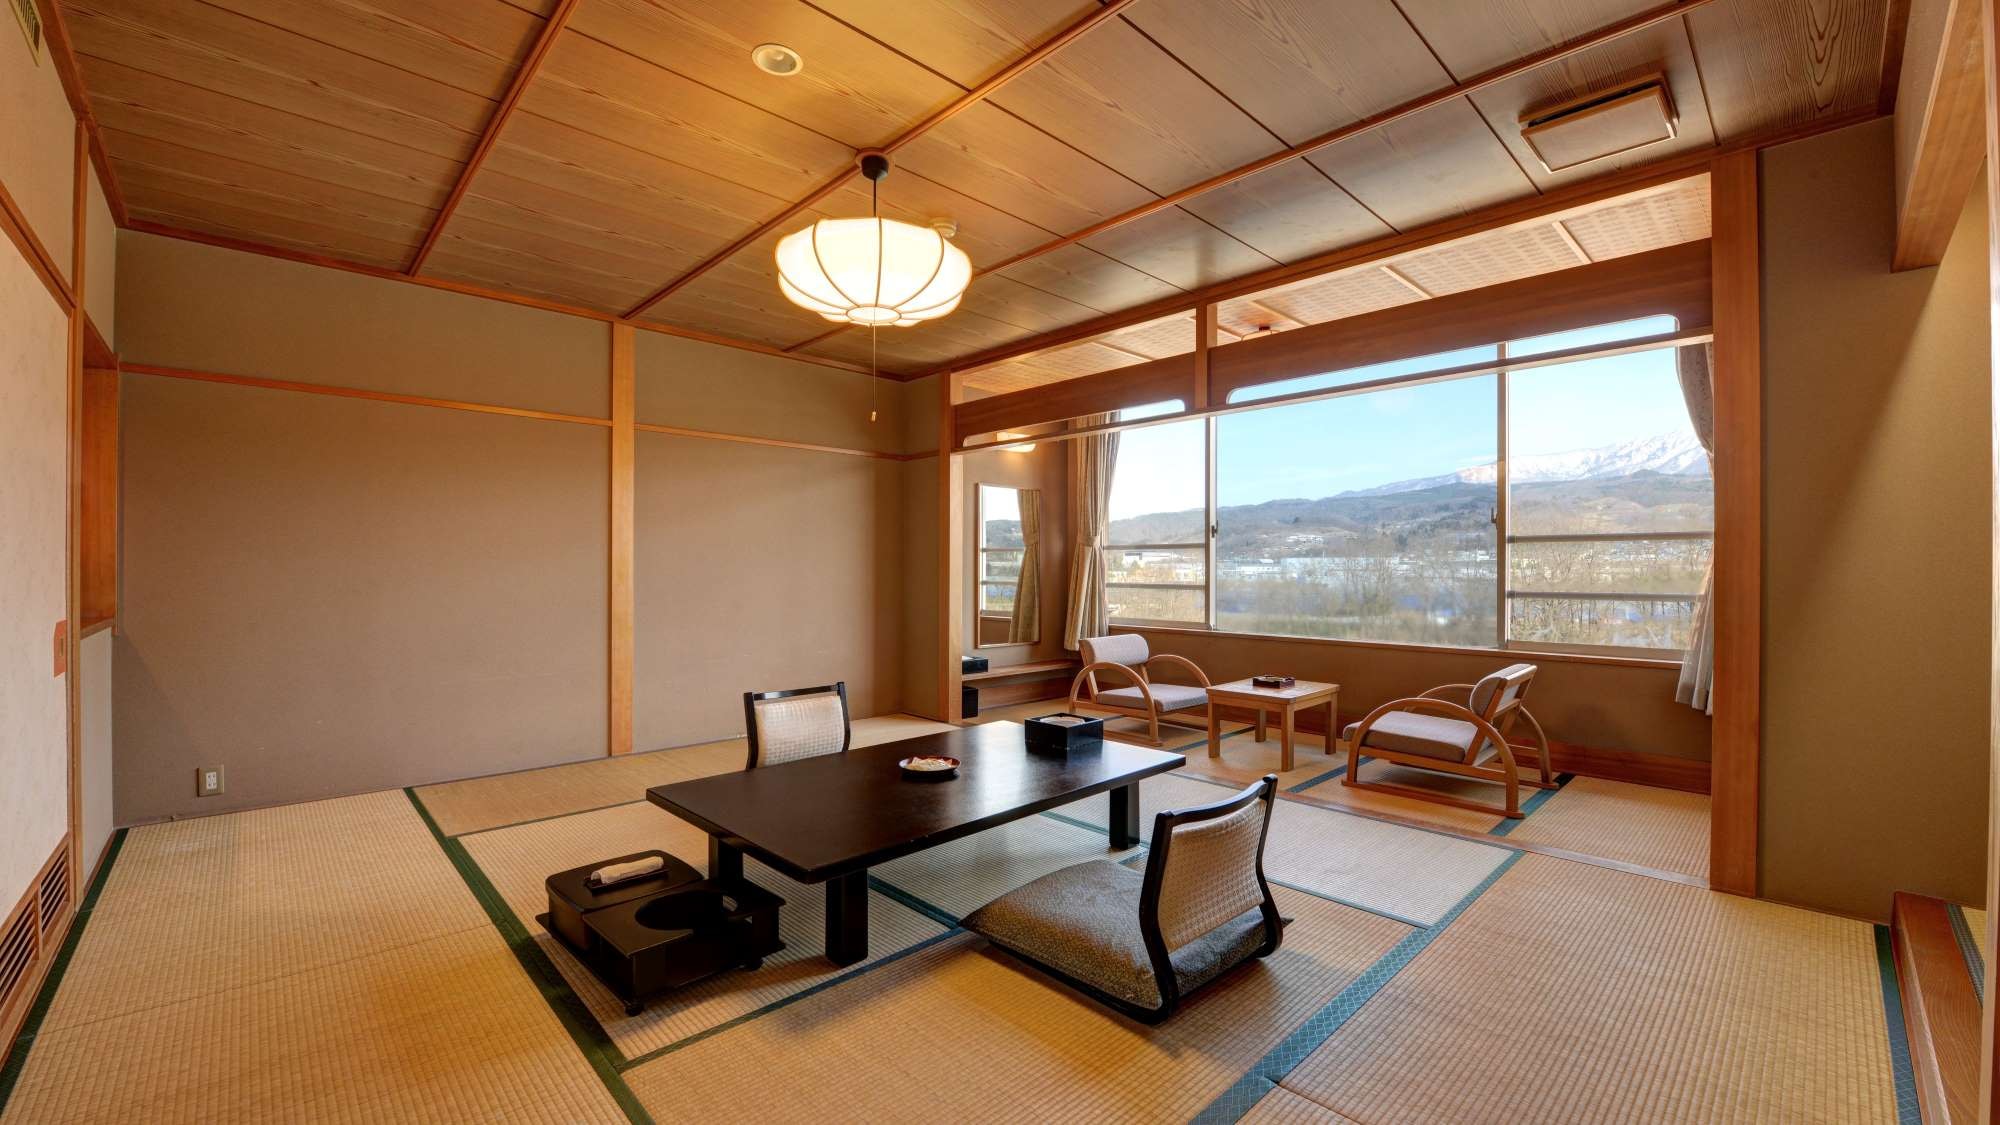 Ruangan yang tenang di mana kepekaan orang Jepang hidup